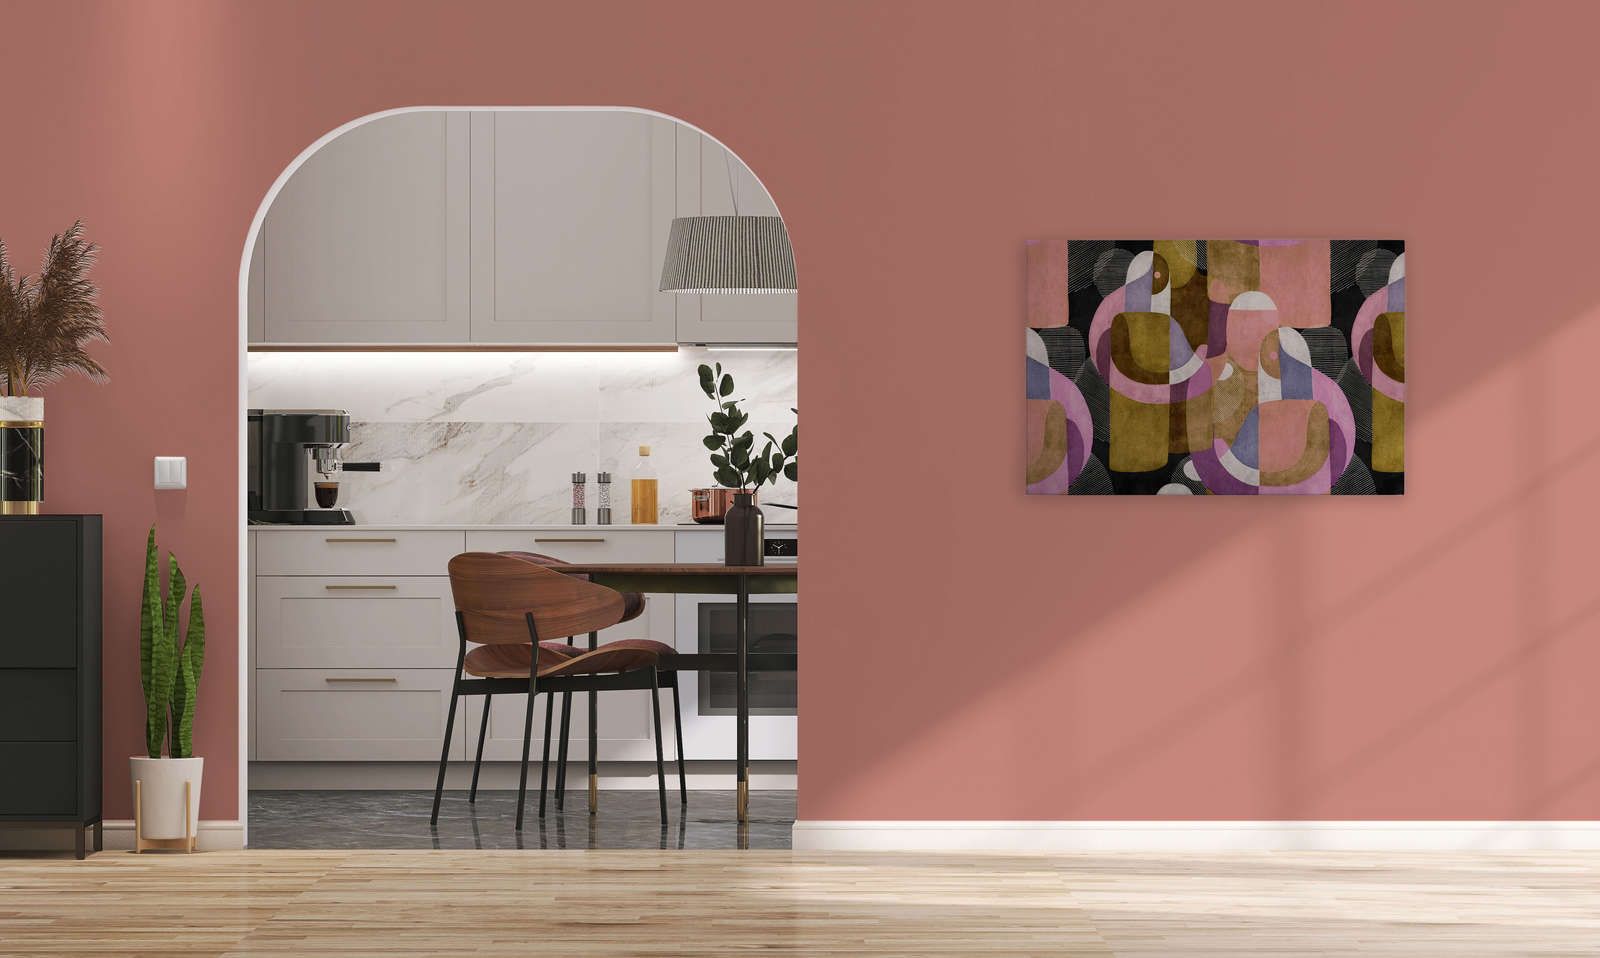             Meeting Place 3 - Canvas schilderij Ethno design in kleurrijke Colour Block stijl - 0,90 m x 0,60 m
        